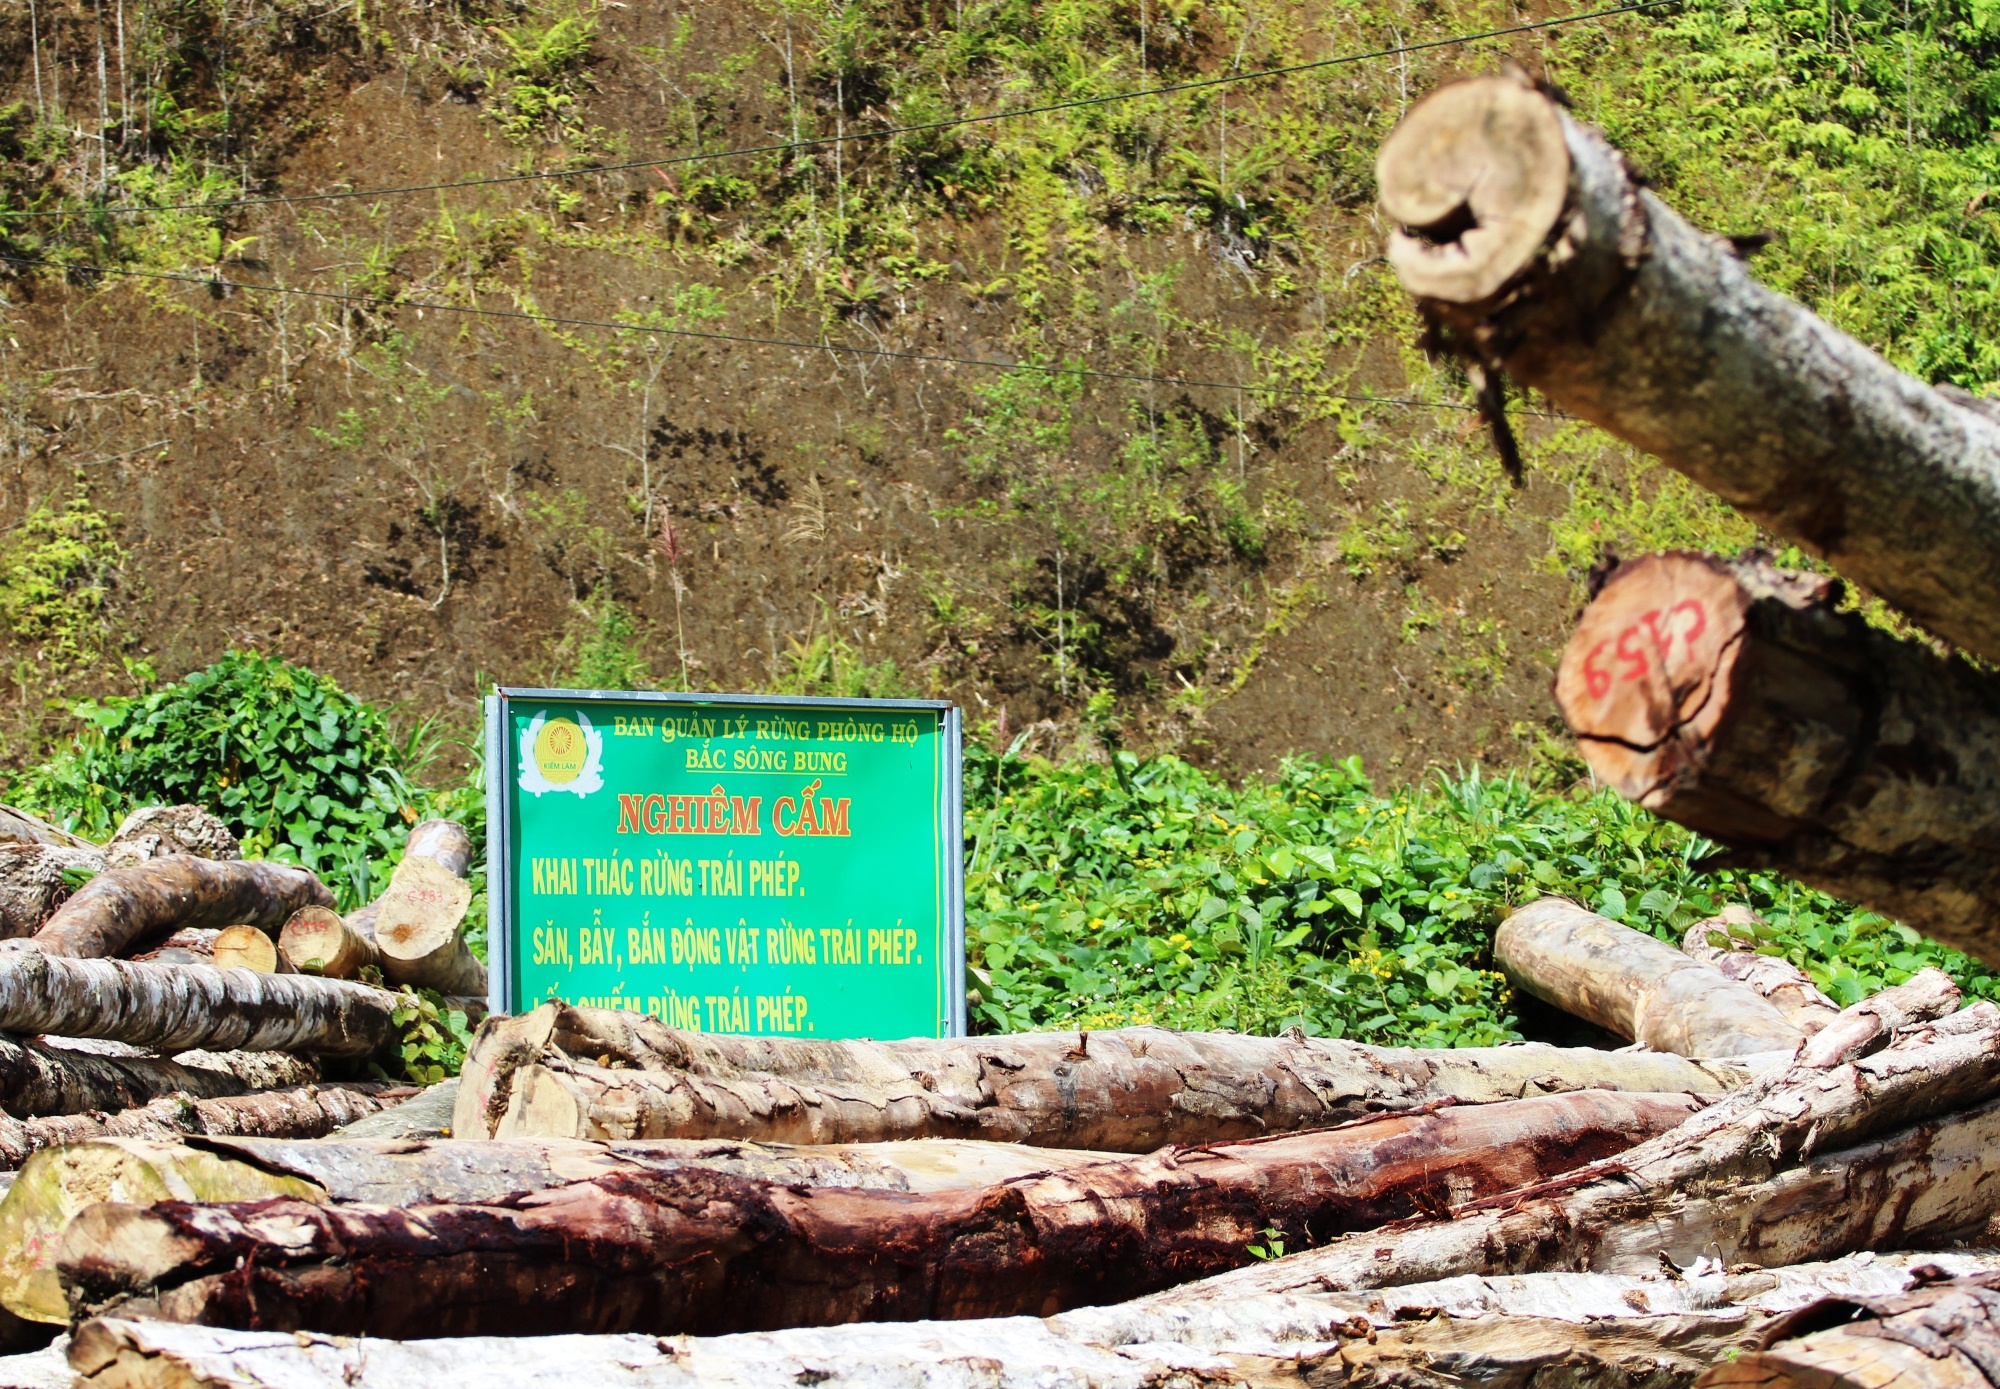 Một bãi tập kết gỗ nằm ngổn ngang ngay dưới tấm biển nghiêm cấm khai thác rừng trái phép ở tỉnh Quảng Nam. (Ảnh: Vietnam+)